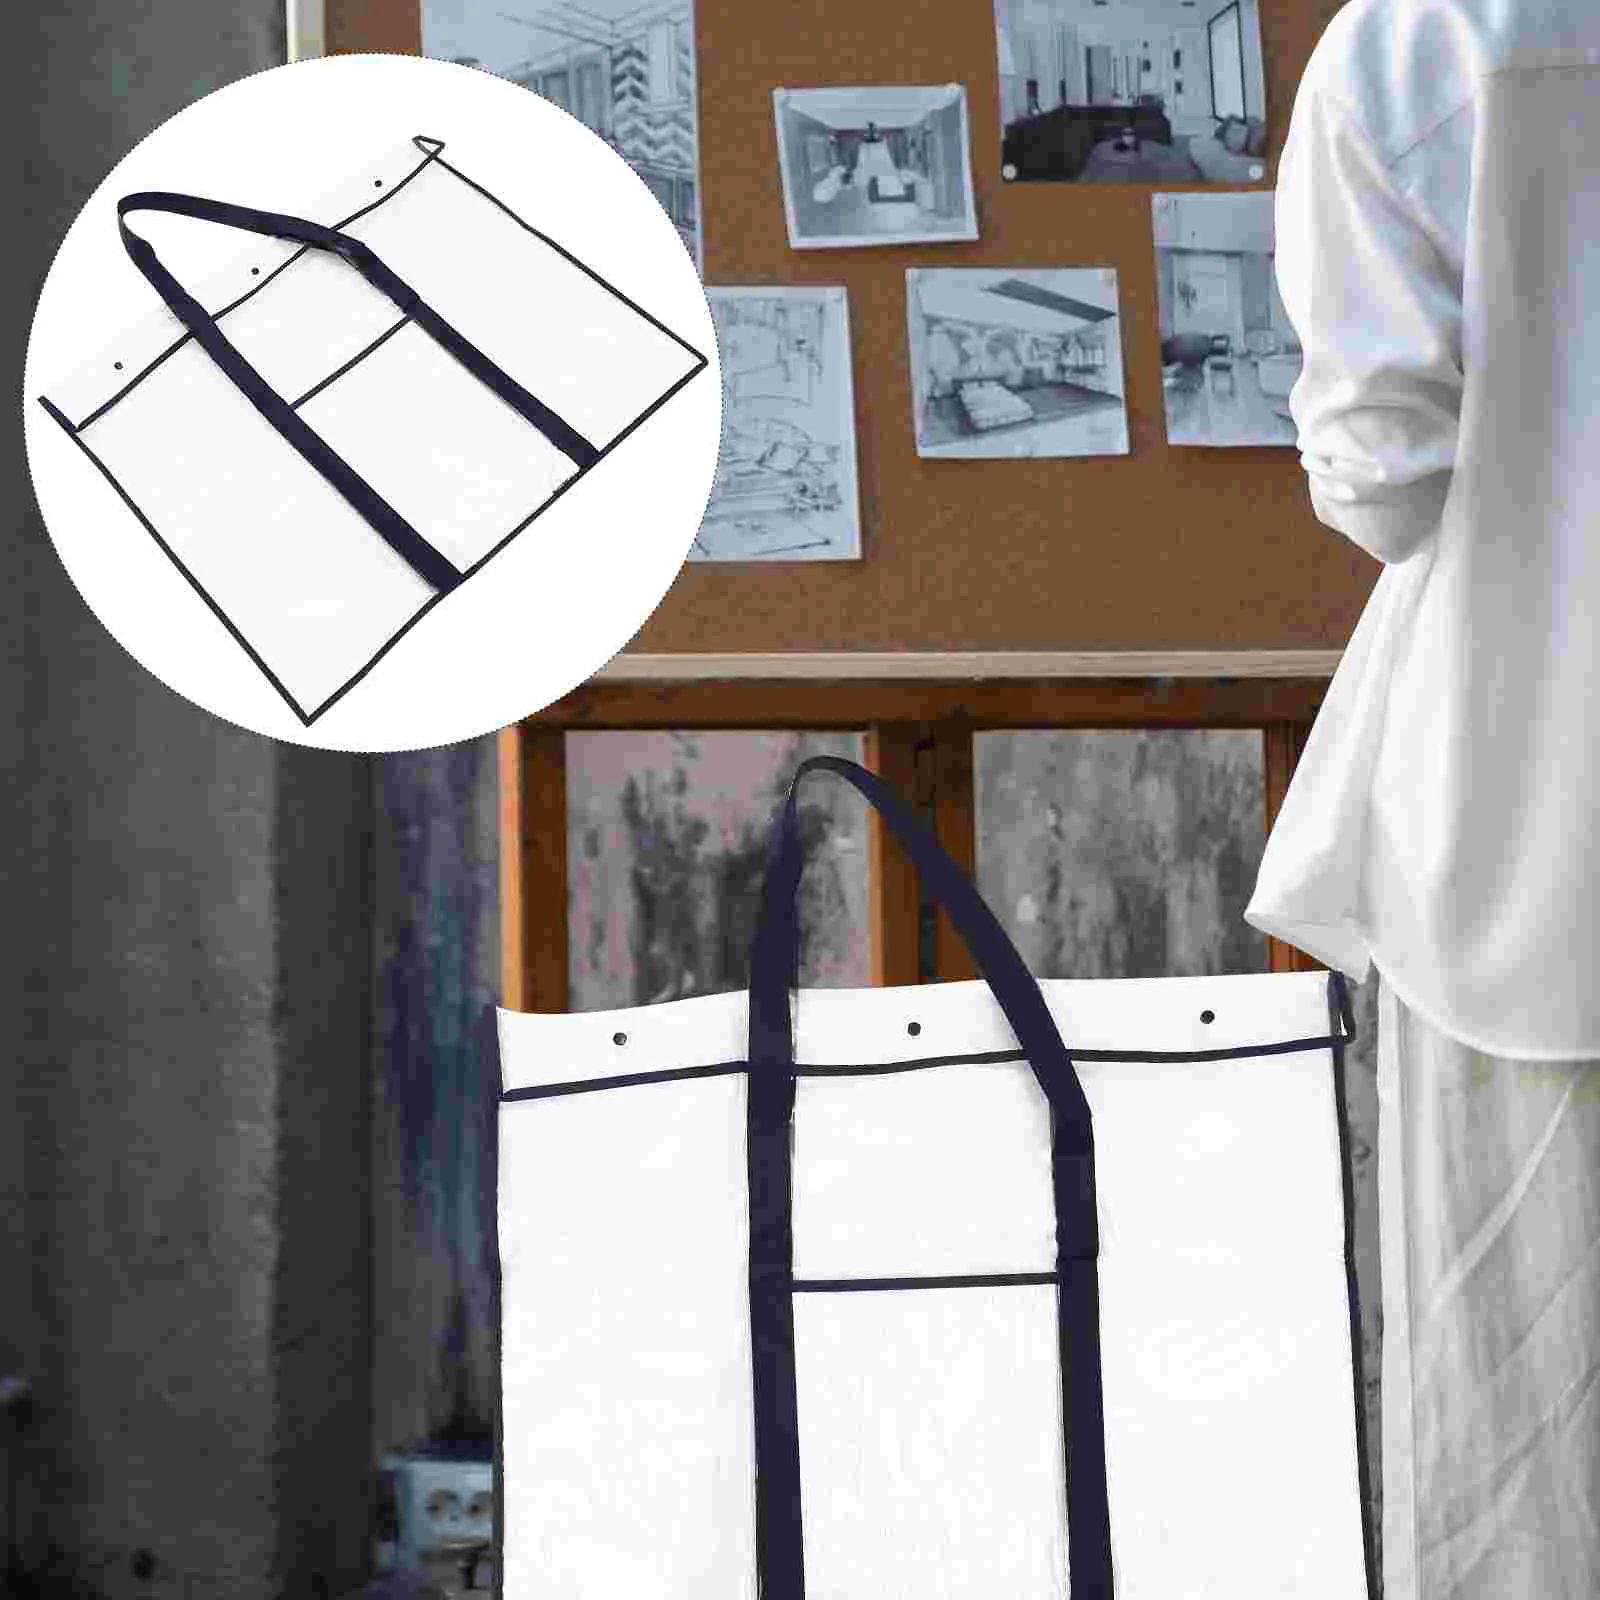  Прозрачная сумка для хранения Держатель файлов Рабочие сумки Наборы для детей Белая доска Холст Рисование ПВХ Произведение искусства Ребенок Большой